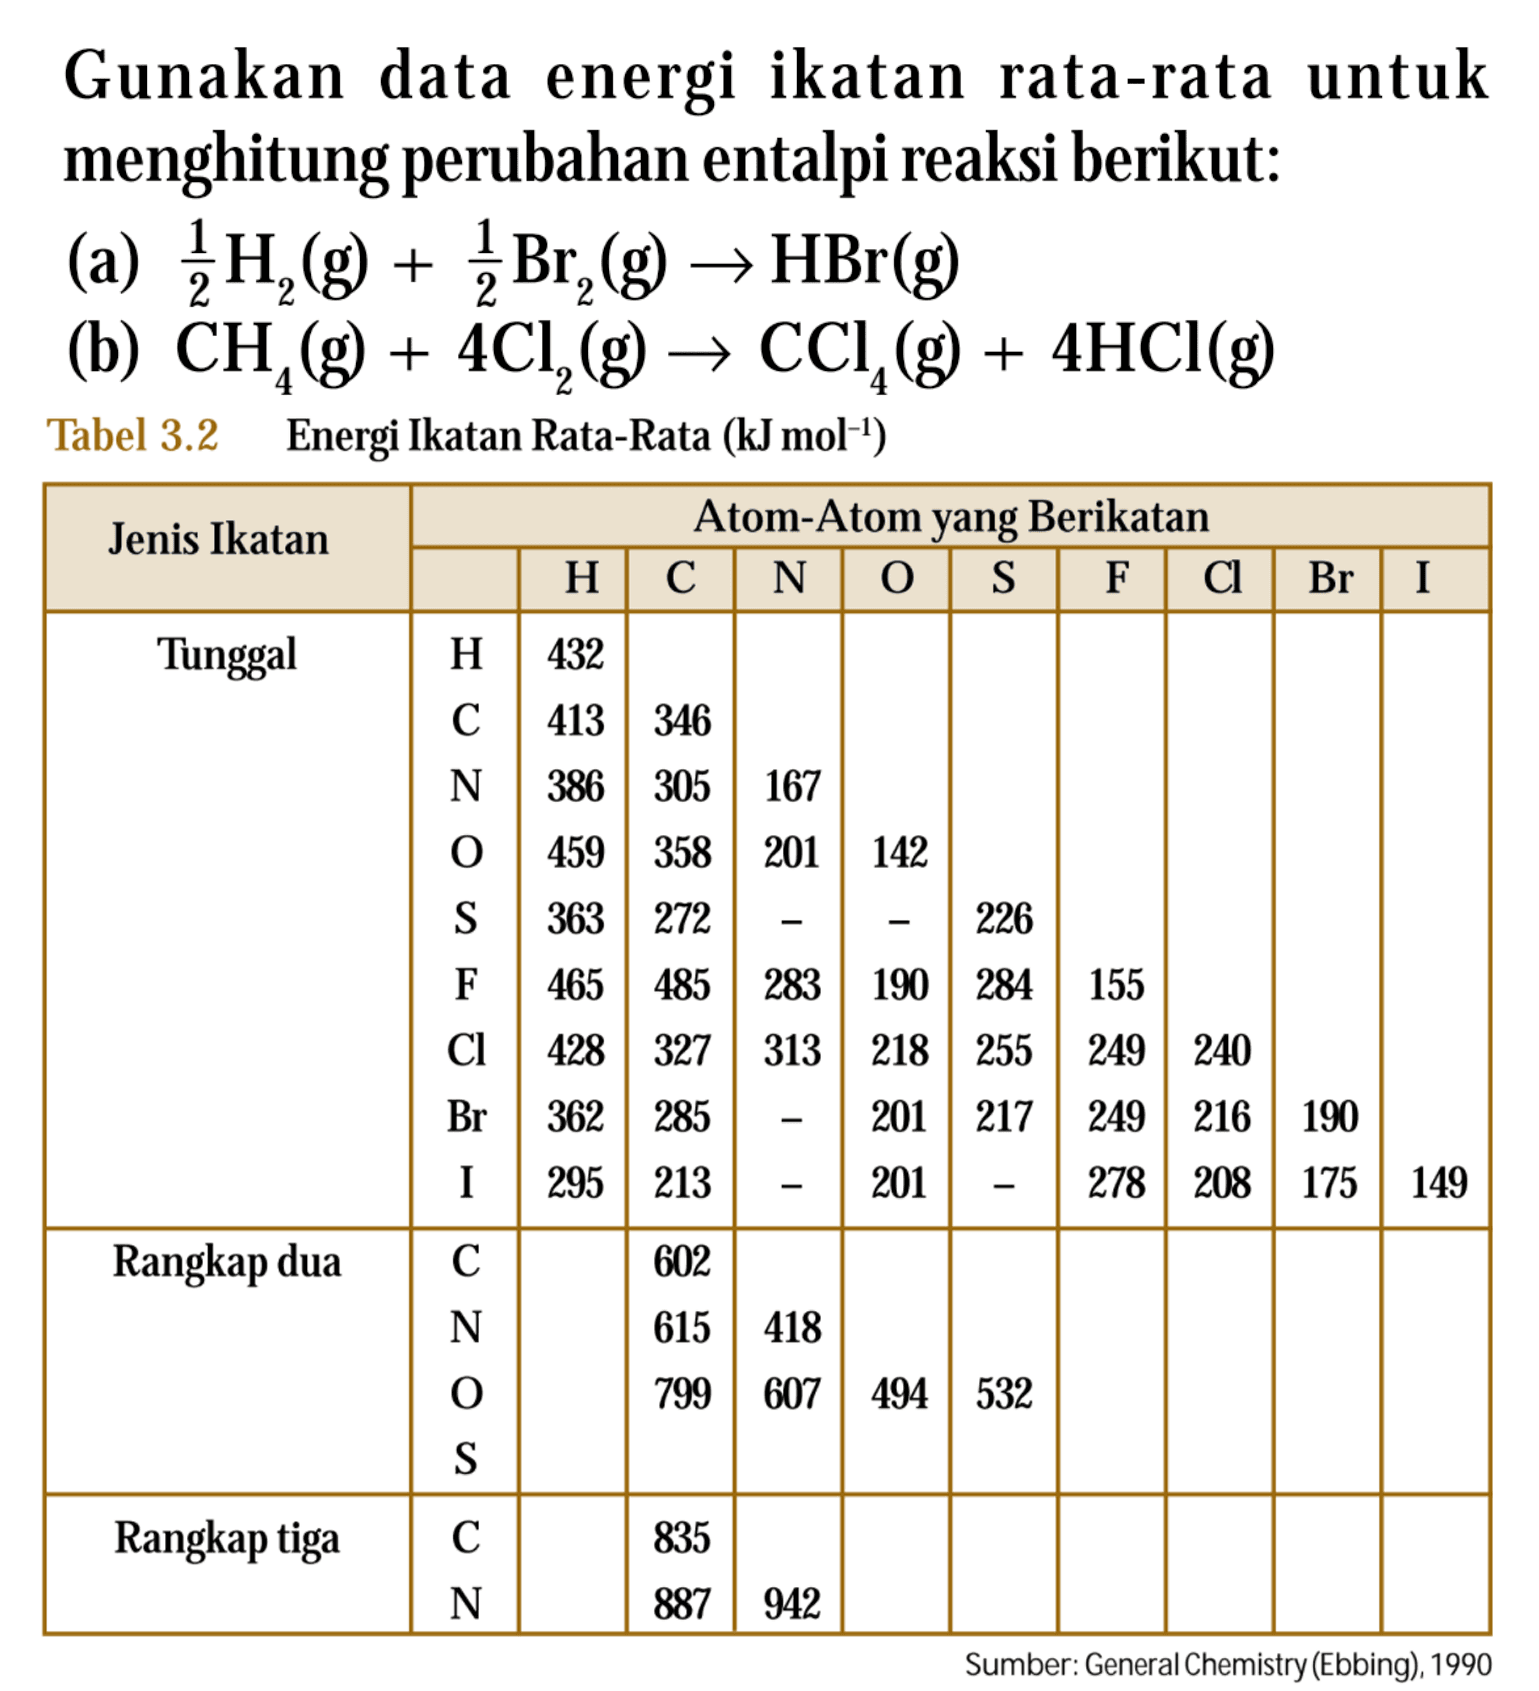 Gunakan data energi ikatan rata-rata untuk menghitung perubahan entalpi reaksi berikut: (a) 1/2 H2 (g) + 1/2 Br2 (g) -> HBr (g) (b) CH4 (g) + 4CL2 (g) -> CCl4 (g) 4HCl(g) Tabel 3.2 Energi Ikatan Rata-Rata (kJ mol^(-1)) Jenis Ikatan Atom-Atom yang Berikatan H C N O S F Cl Br I Tunggal H 432 C 413 346 N 386 305 167 O 459 358 201 142 S 363 272 - - 226 F 465 485 283 190 284 155 Cl 428 327 313 218 255 249 240 Br 362 285 - 201 217 249 216 190 I 295 213 201 278 208 175 149 Rangkap dua C 602 N 615 418 O 799 607 494 532 S Rangkap tiga C 835 N 887 942 Sumber: General Chemistry (Ebbing), 1990